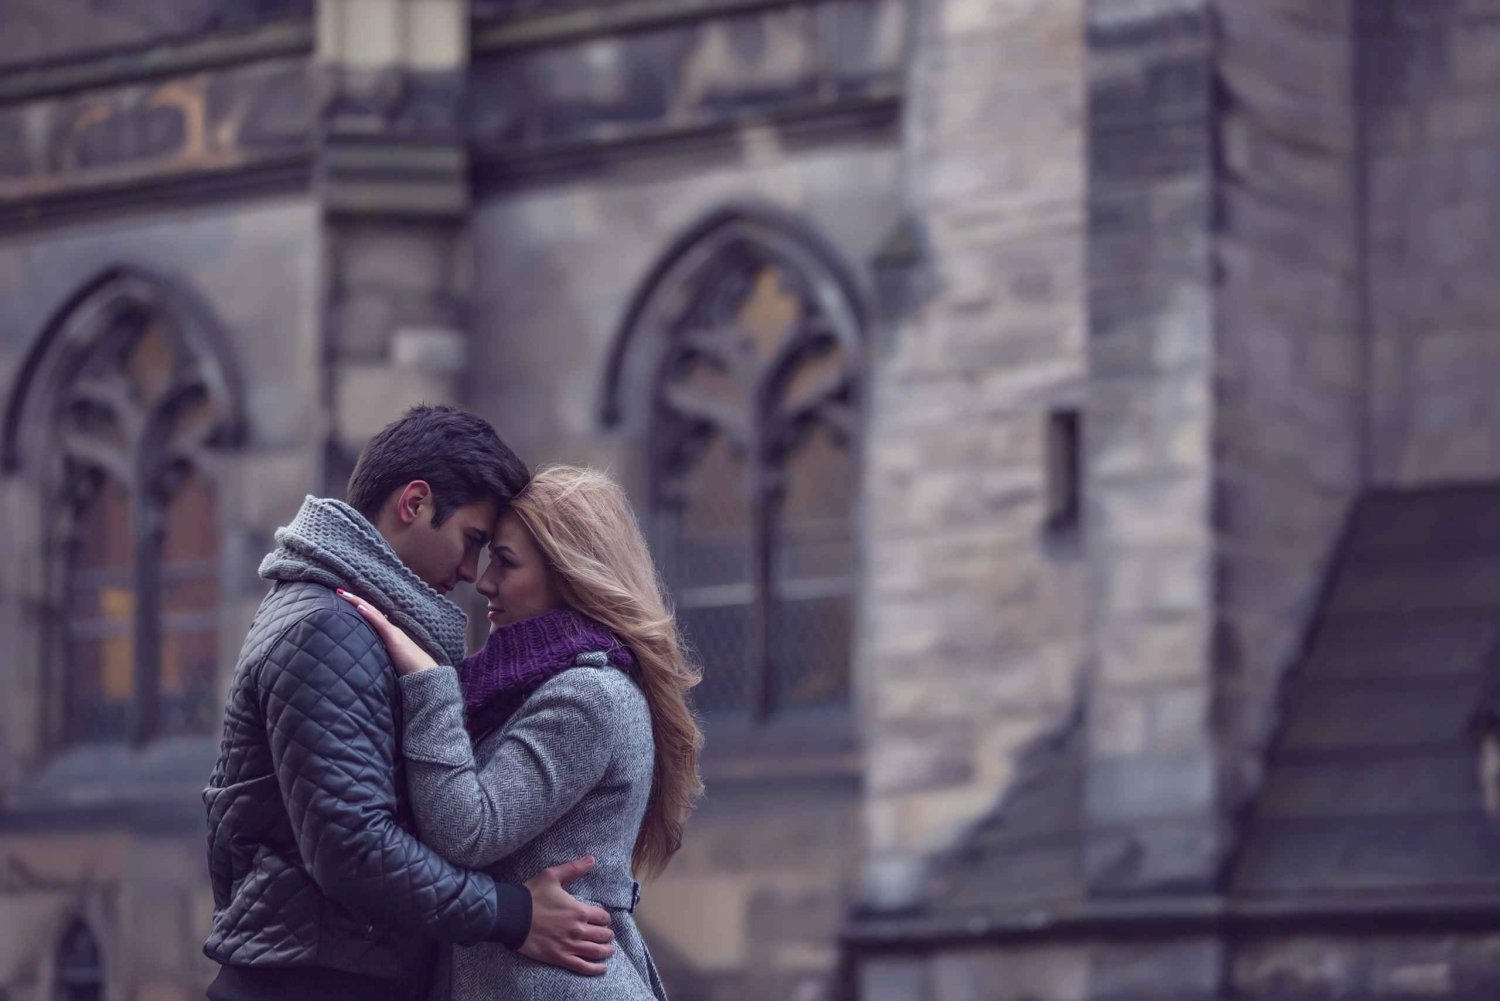 Edinburgh: Profesjonell fotografering av romantiske par